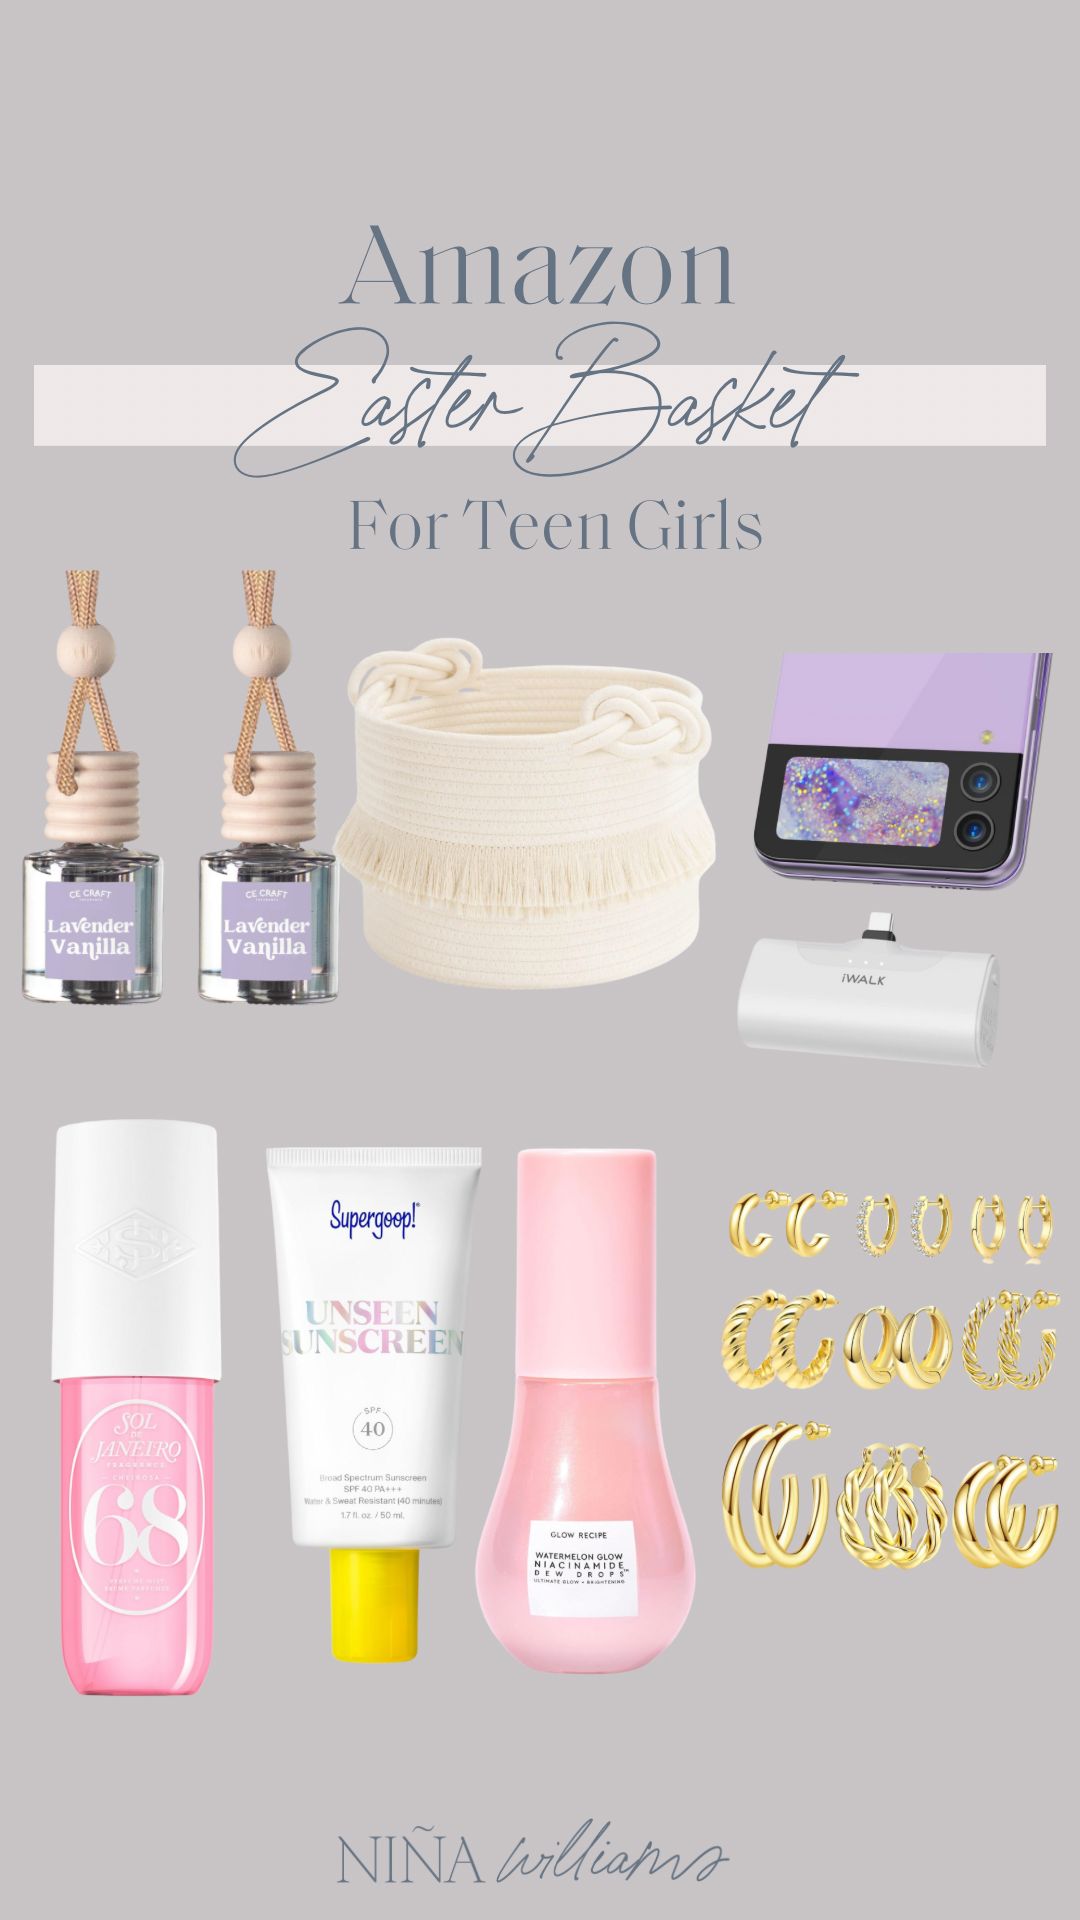 Easter Basket For Teen Girls | Amazon (US)